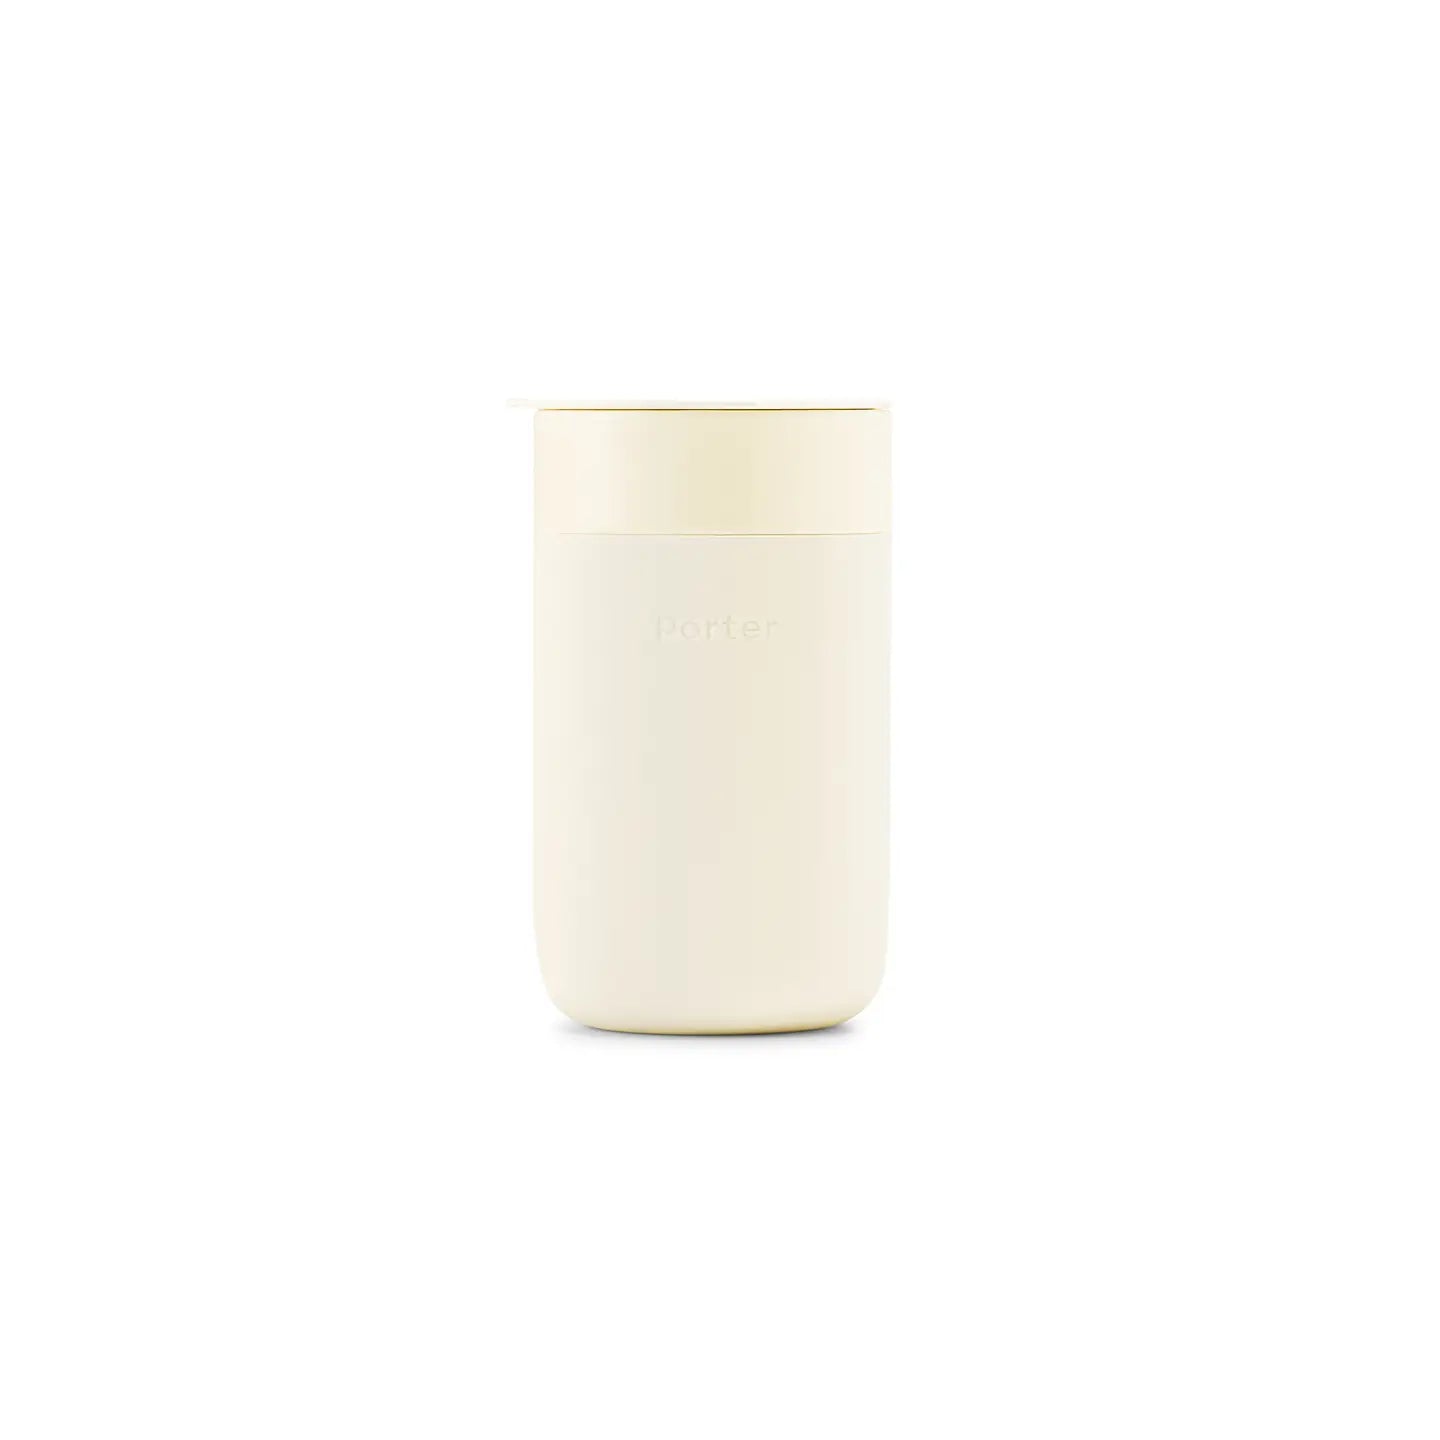 Ceramic Reusable Coffee Mug 16oz